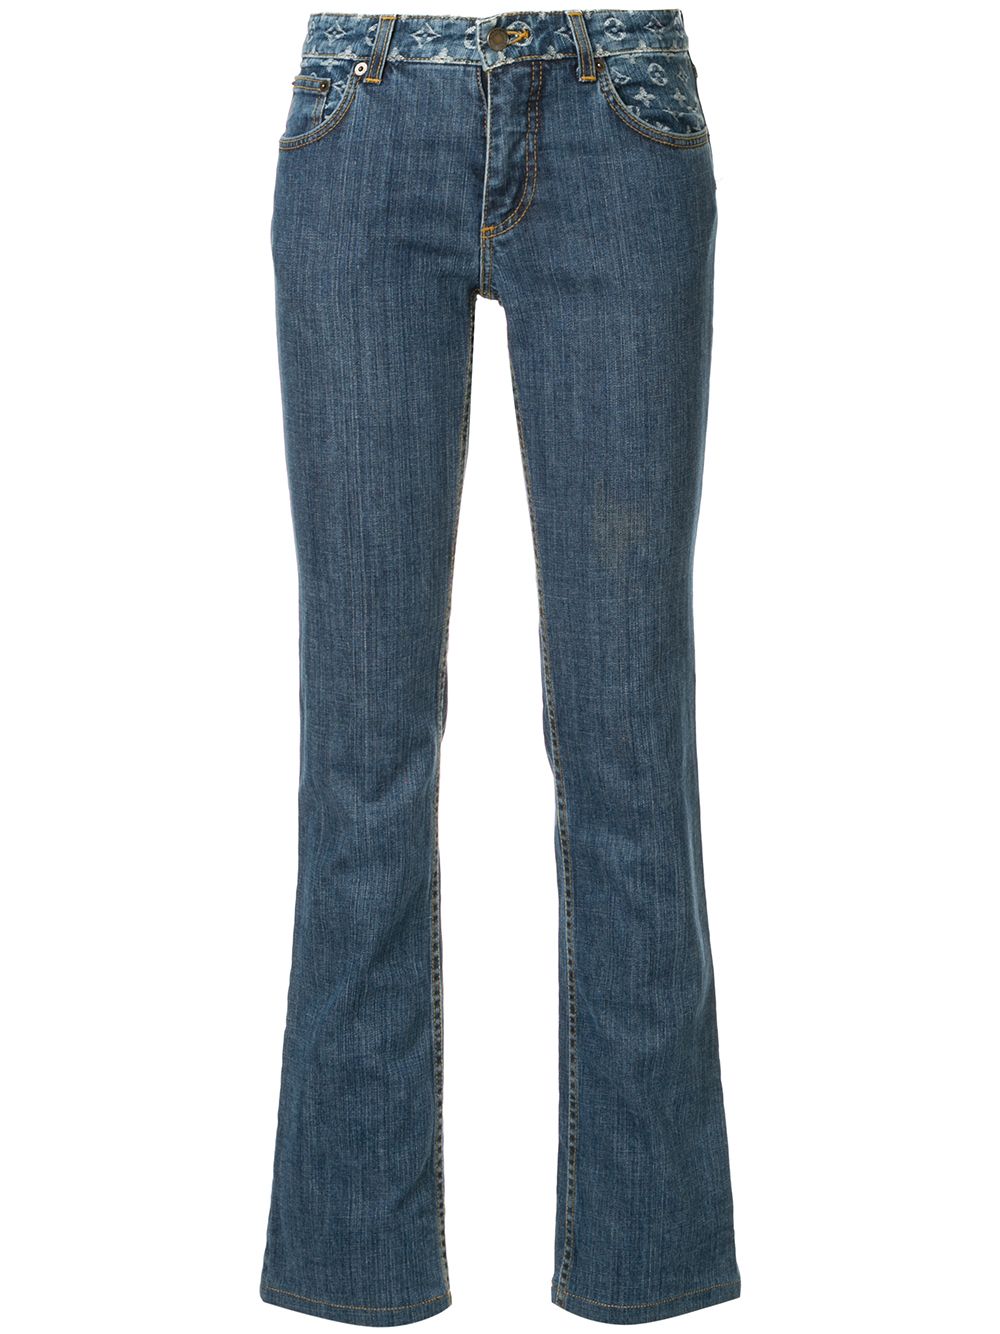 Louis Vuitton Stonewashed Monogram Patch Boot-Cut Jeans Blue. Size 38